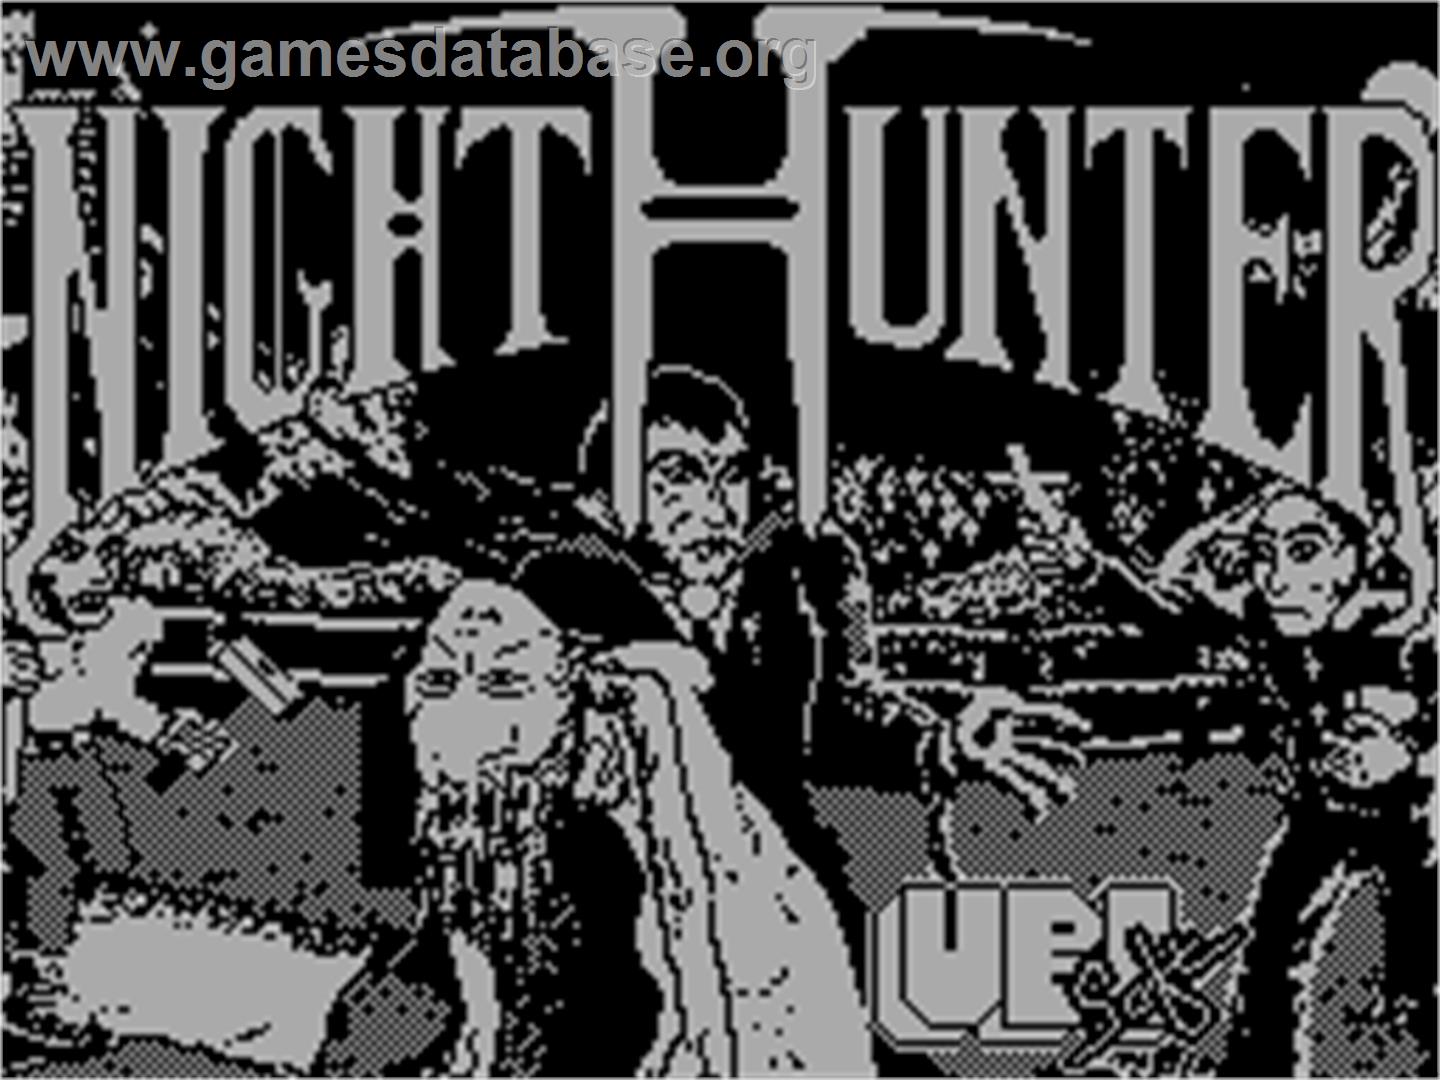 NightHunter - Sinclair ZX Spectrum - Artwork - Title Screen